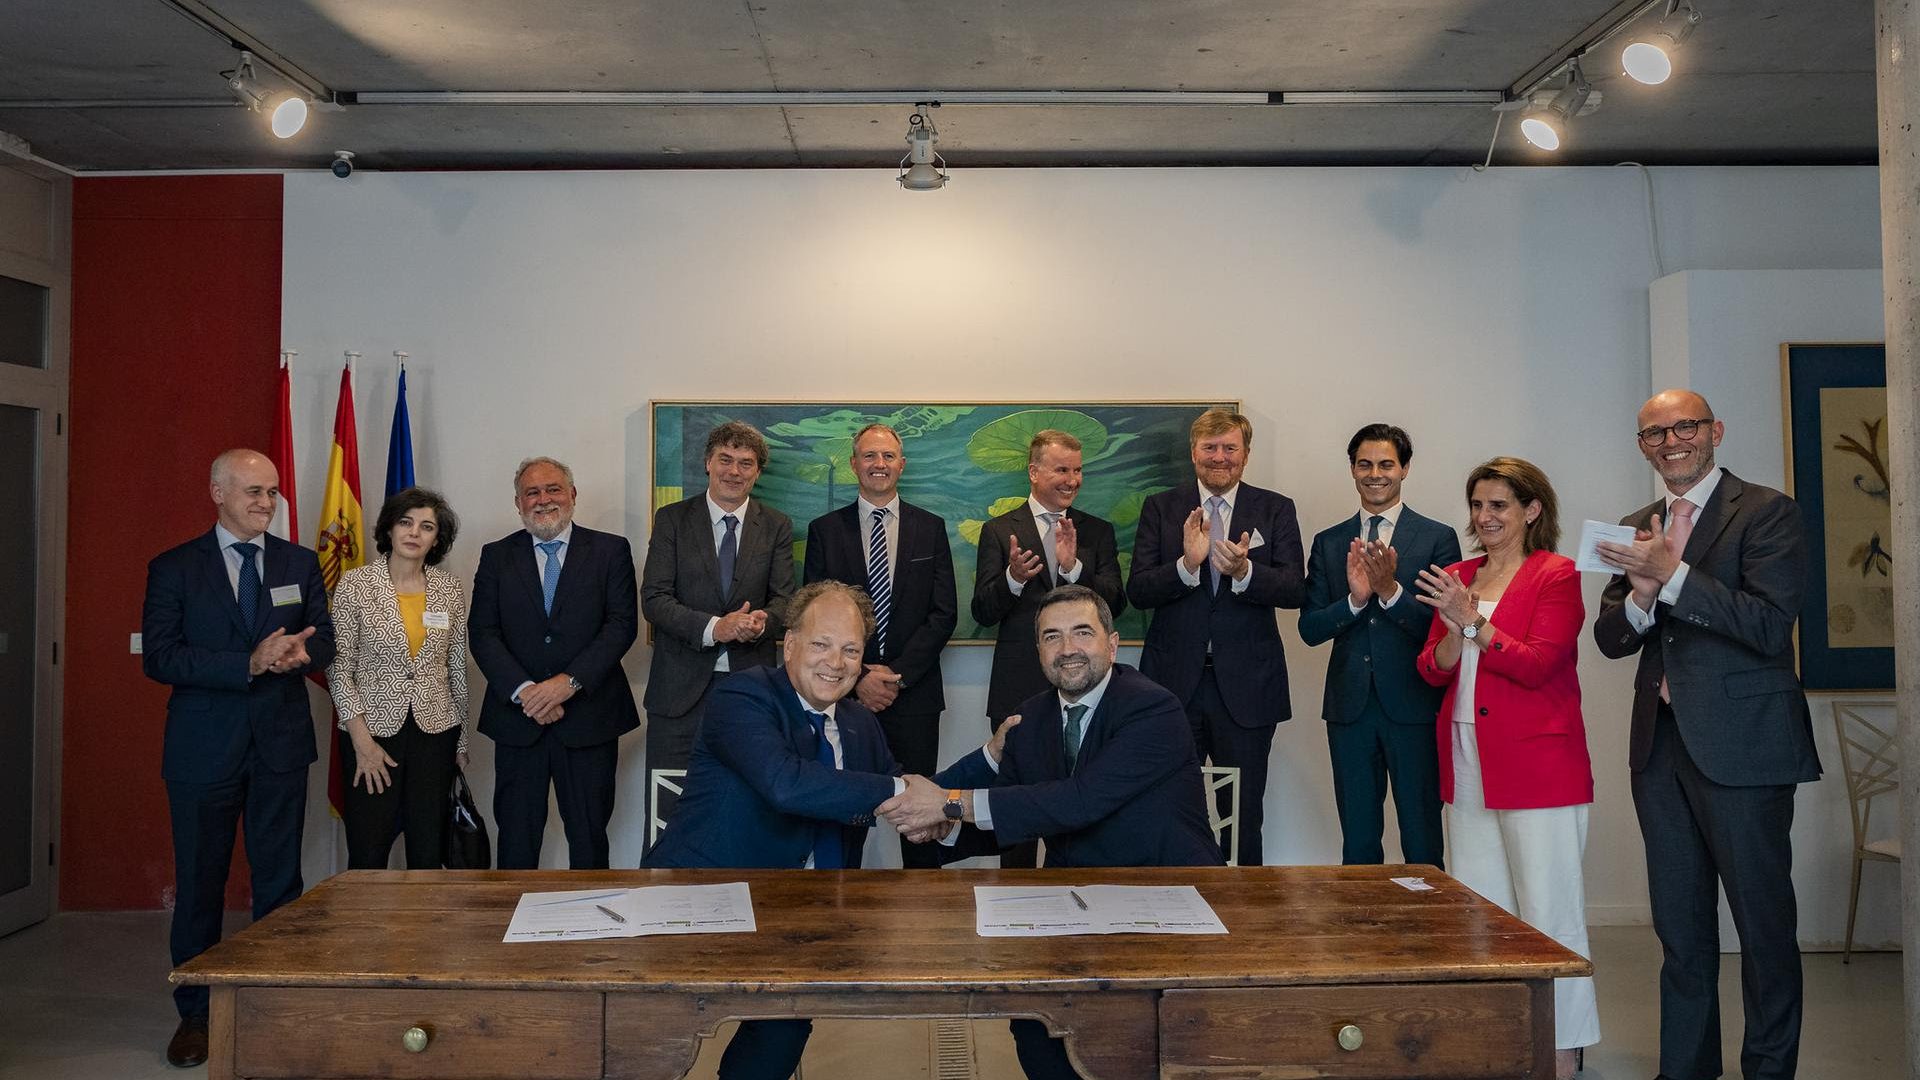 De ondertekening van de  Memorandum of Understanding (MoU) werd bijgewoond door koning Willem-Alexander, minister Rob Jetten, de Spaanse minister Teresa Ribera.